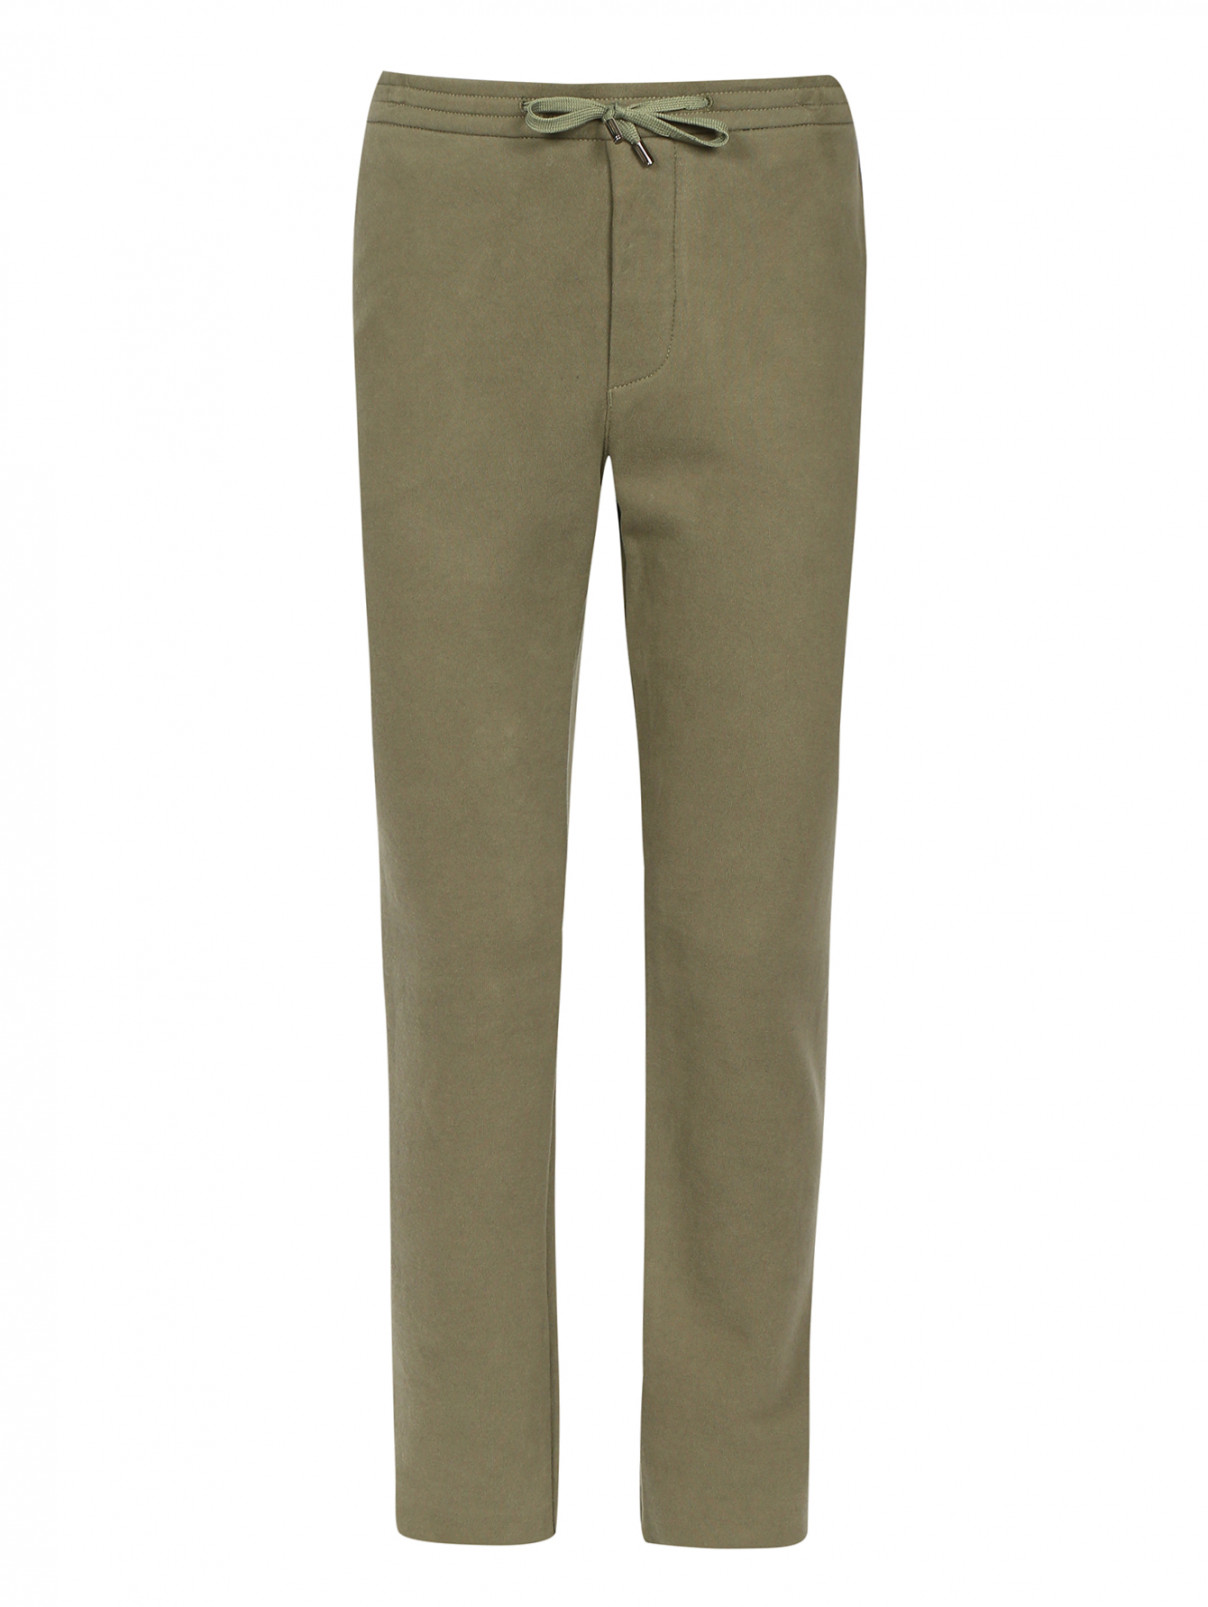 Трикотажные брюки из хлопка на кулиске Ermanno Scervino  –  Общий вид  – Цвет:  Зеленый